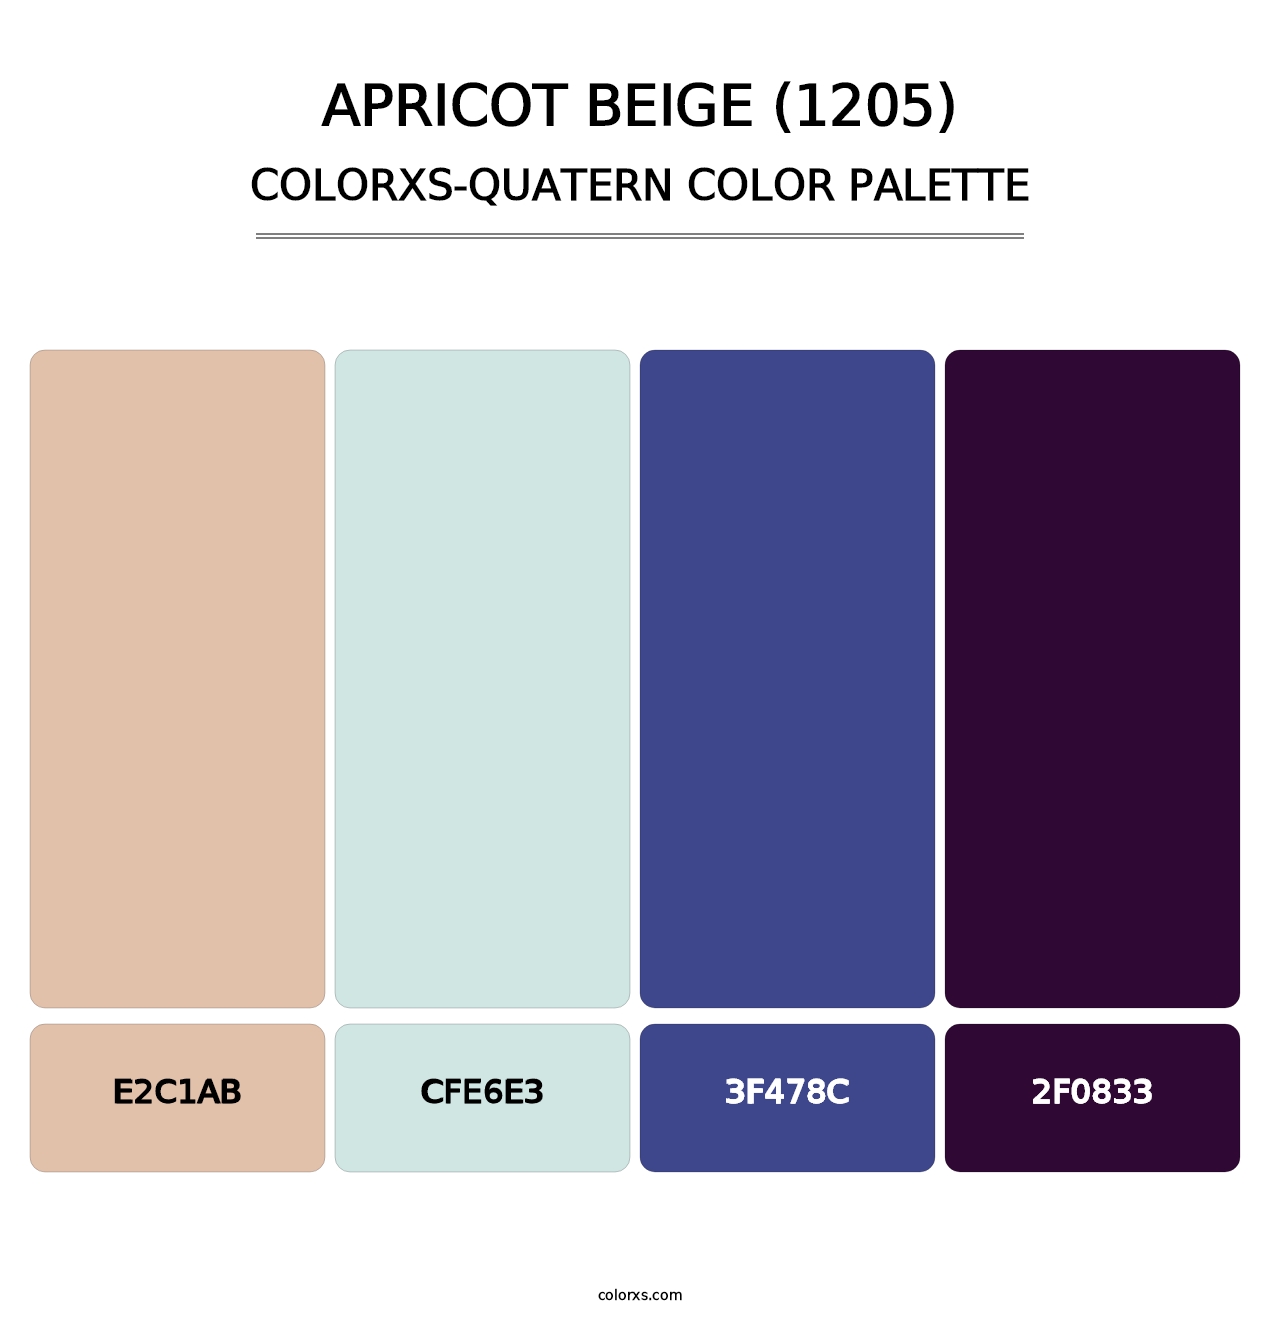 Apricot Beige (1205) - Colorxs Quatern Palette